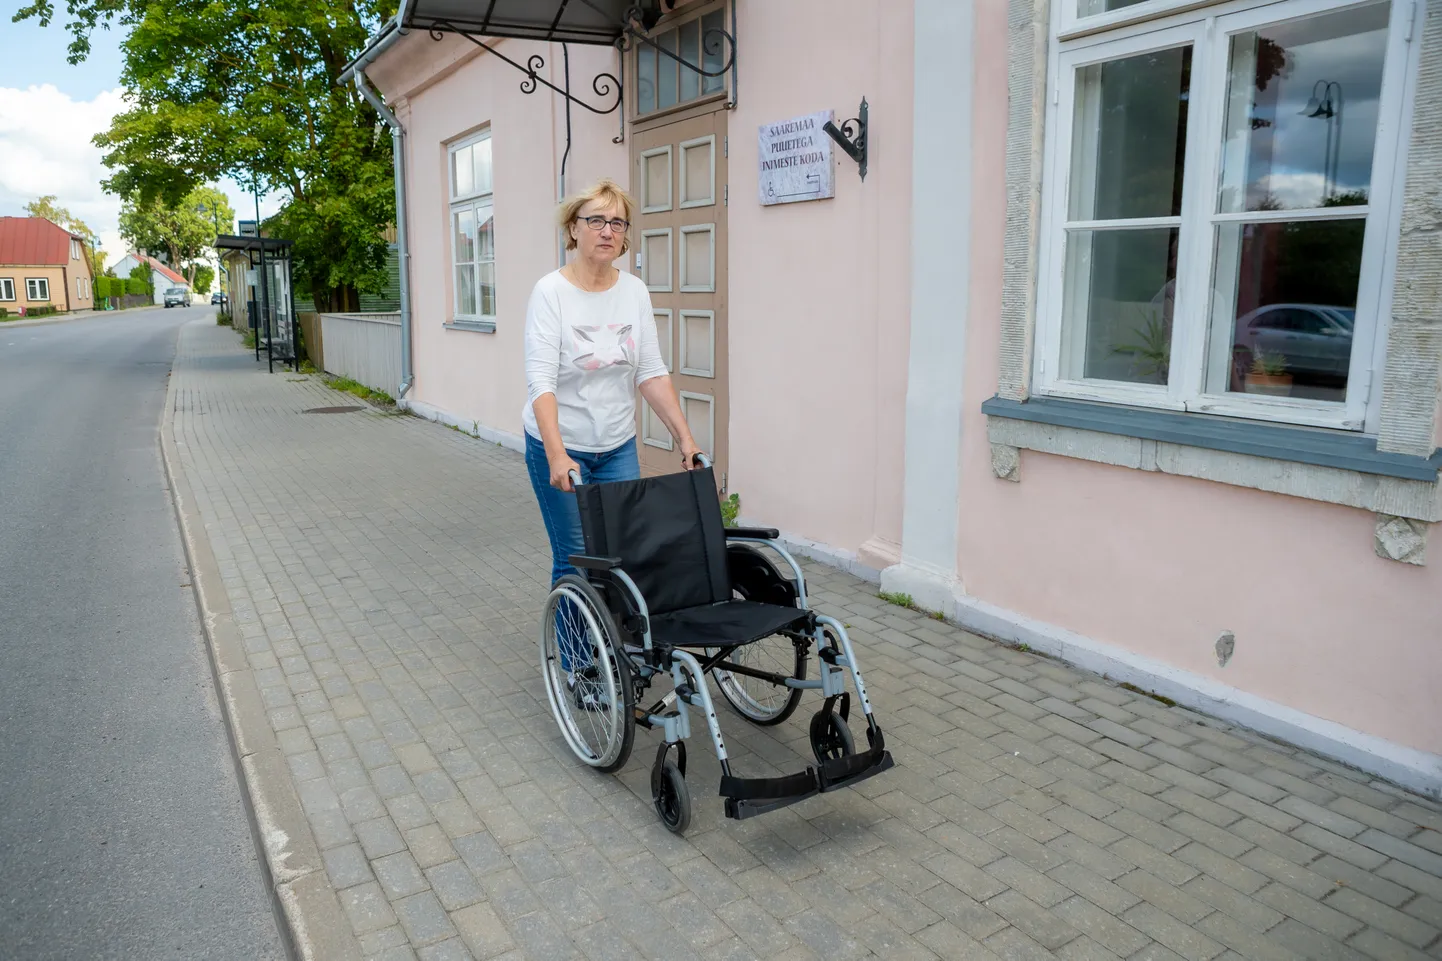 HÄDAVAJALIK TEENUS: Saaremaa puuetega inimeste koja juhataja Veronika Allase sõnul on sotsiaaltransport tööl käivate pimedate ja liikumispuudega inimeste jaoks hädavajalik teenus.